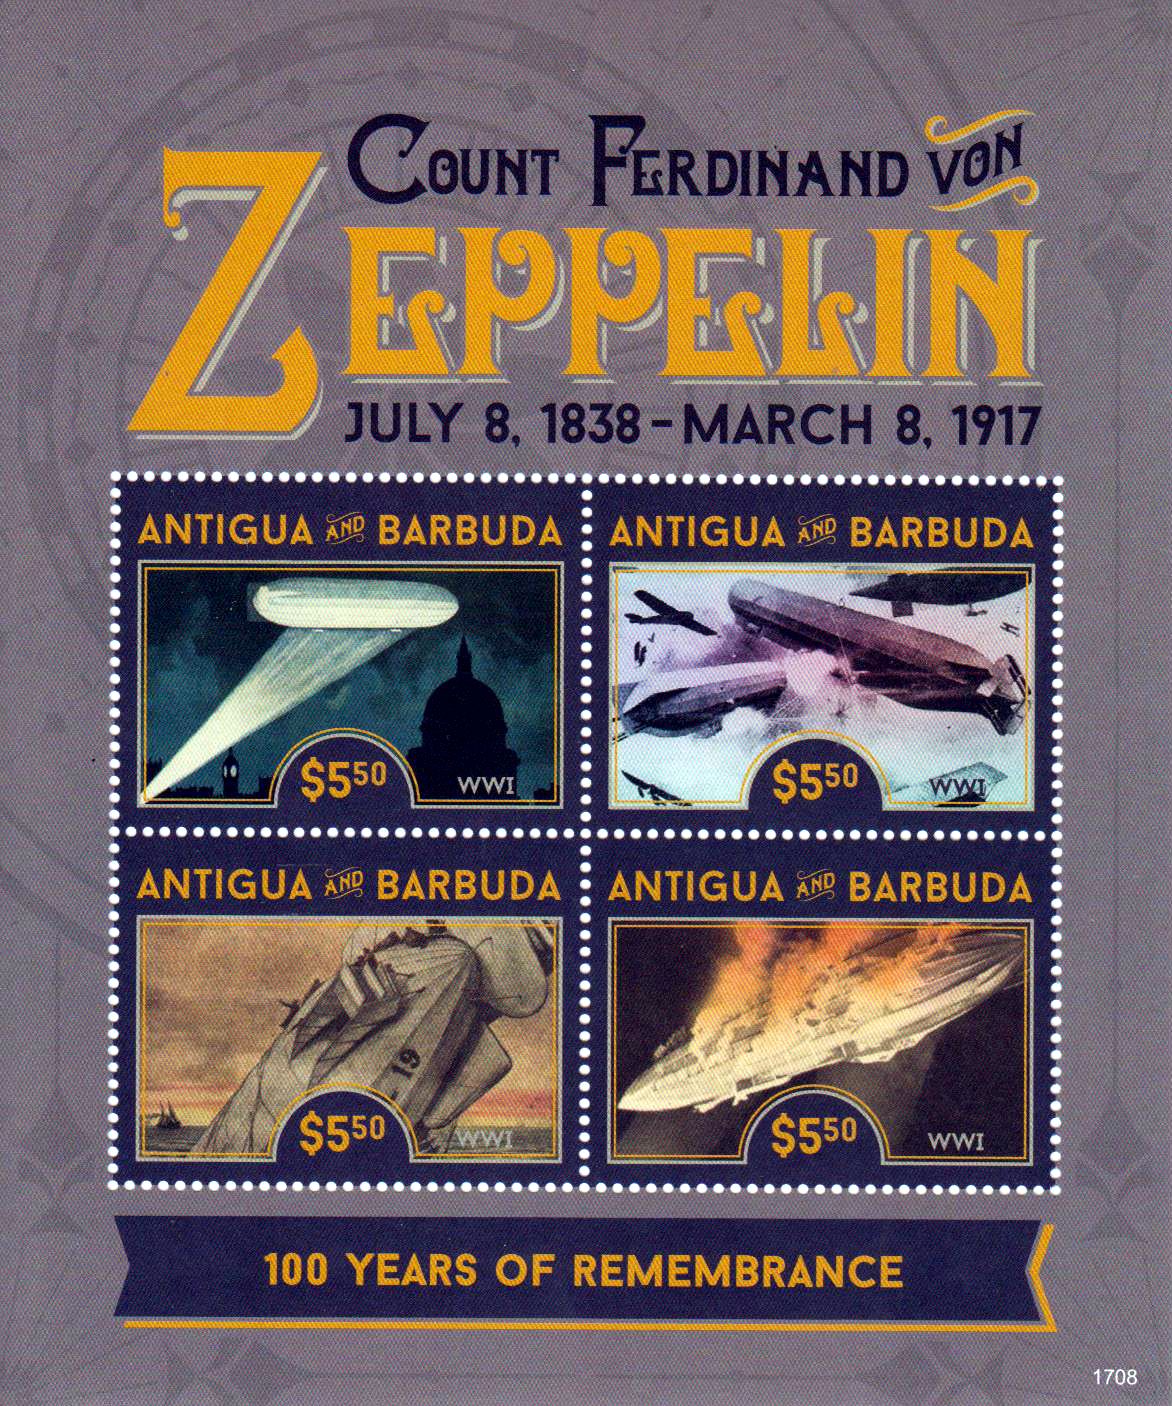 Ferdinand von Zeppelin, Luftschiffe